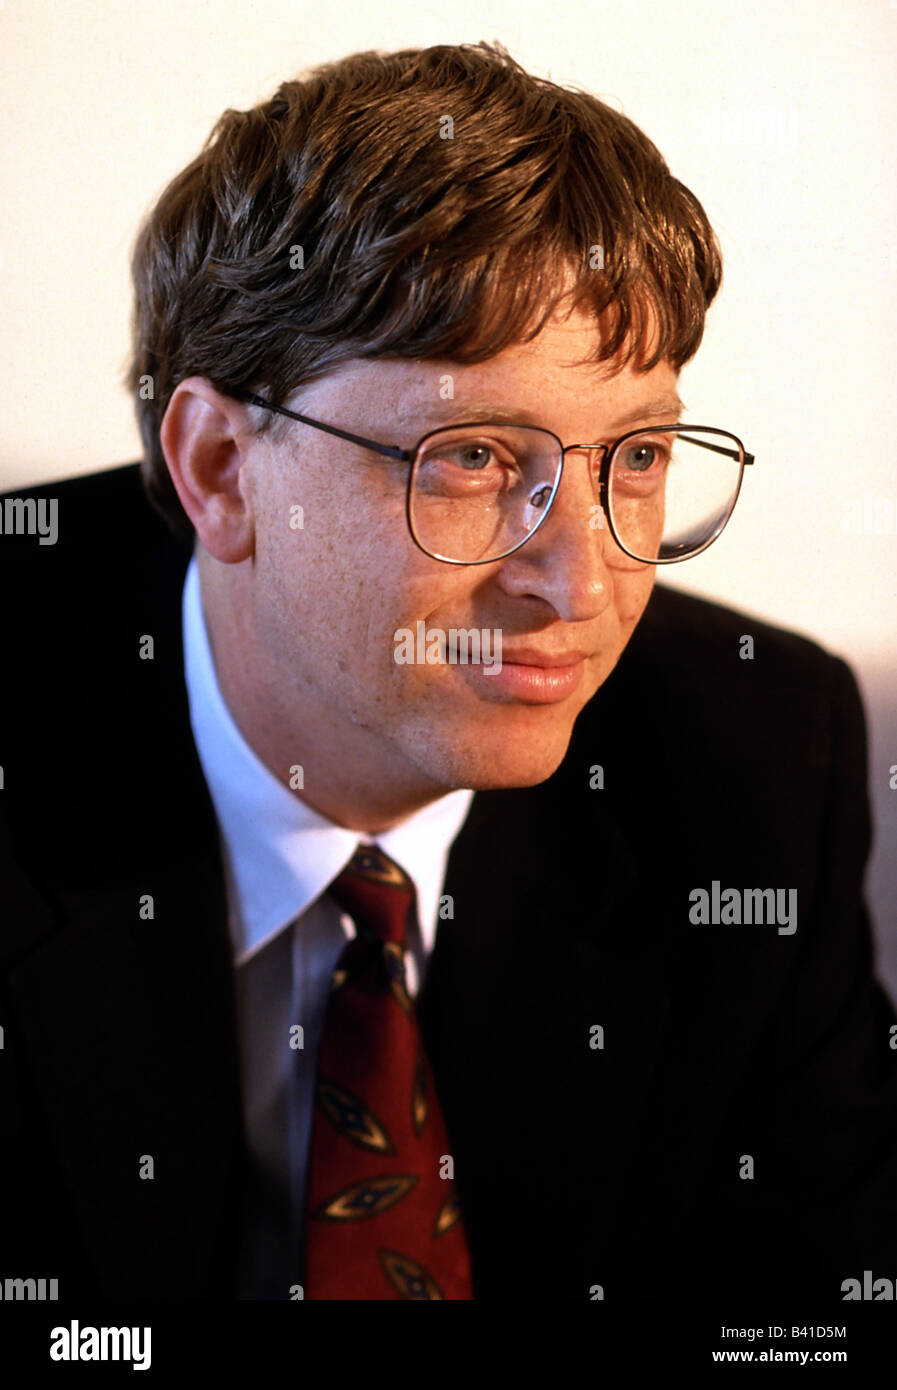 Gates, William, 'Bill', * 28.10.1955, entrepreneur américain, (informatique), co-fondateur de Microsoft, Portrait, Munich, 1995, Banque D'Images